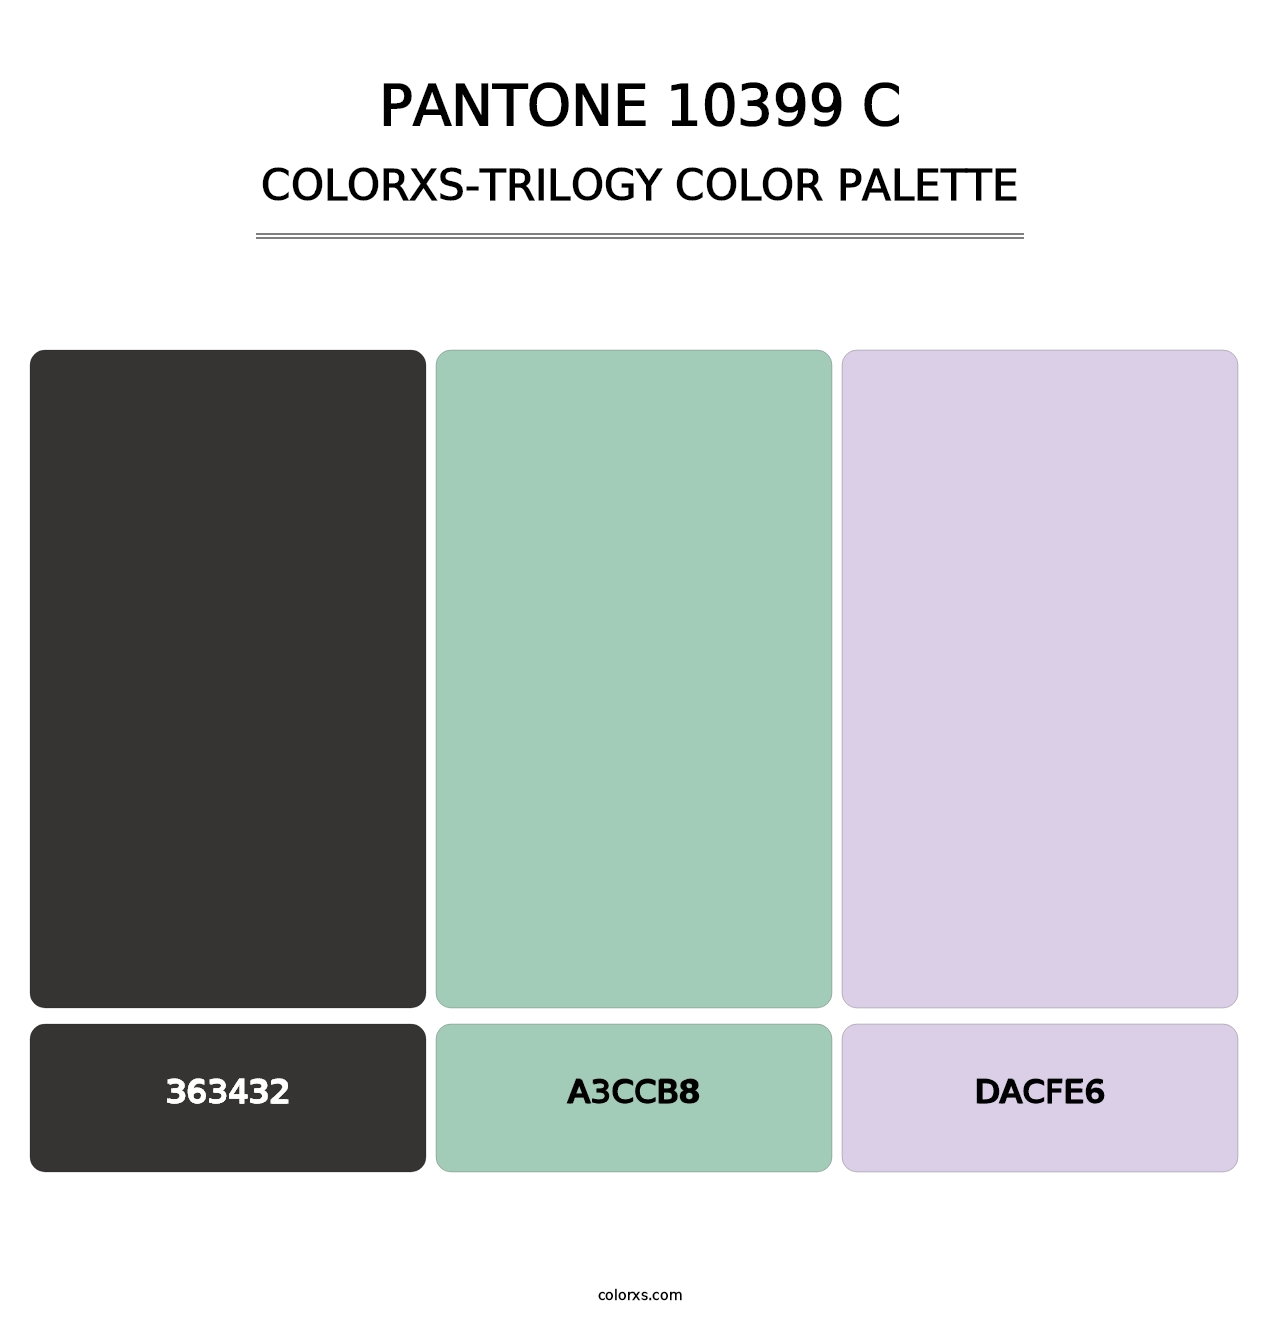 PANTONE 10399 C - Colorxs Trilogy Palette